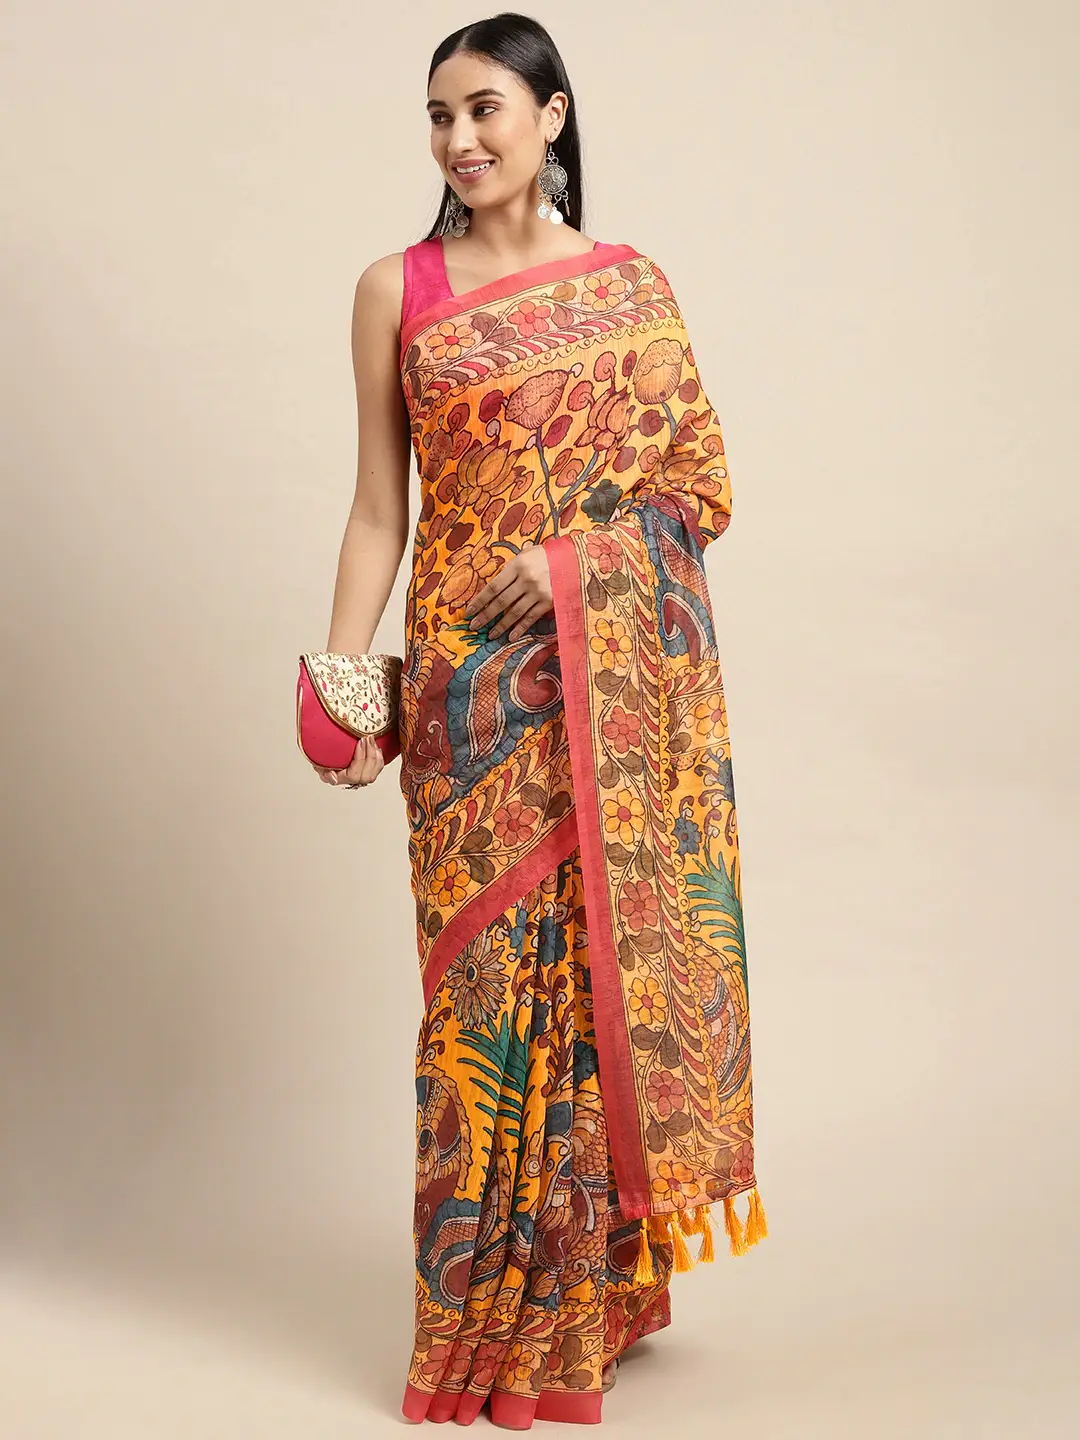  Latest Digital Print Kalamkari Linen Saree Collection